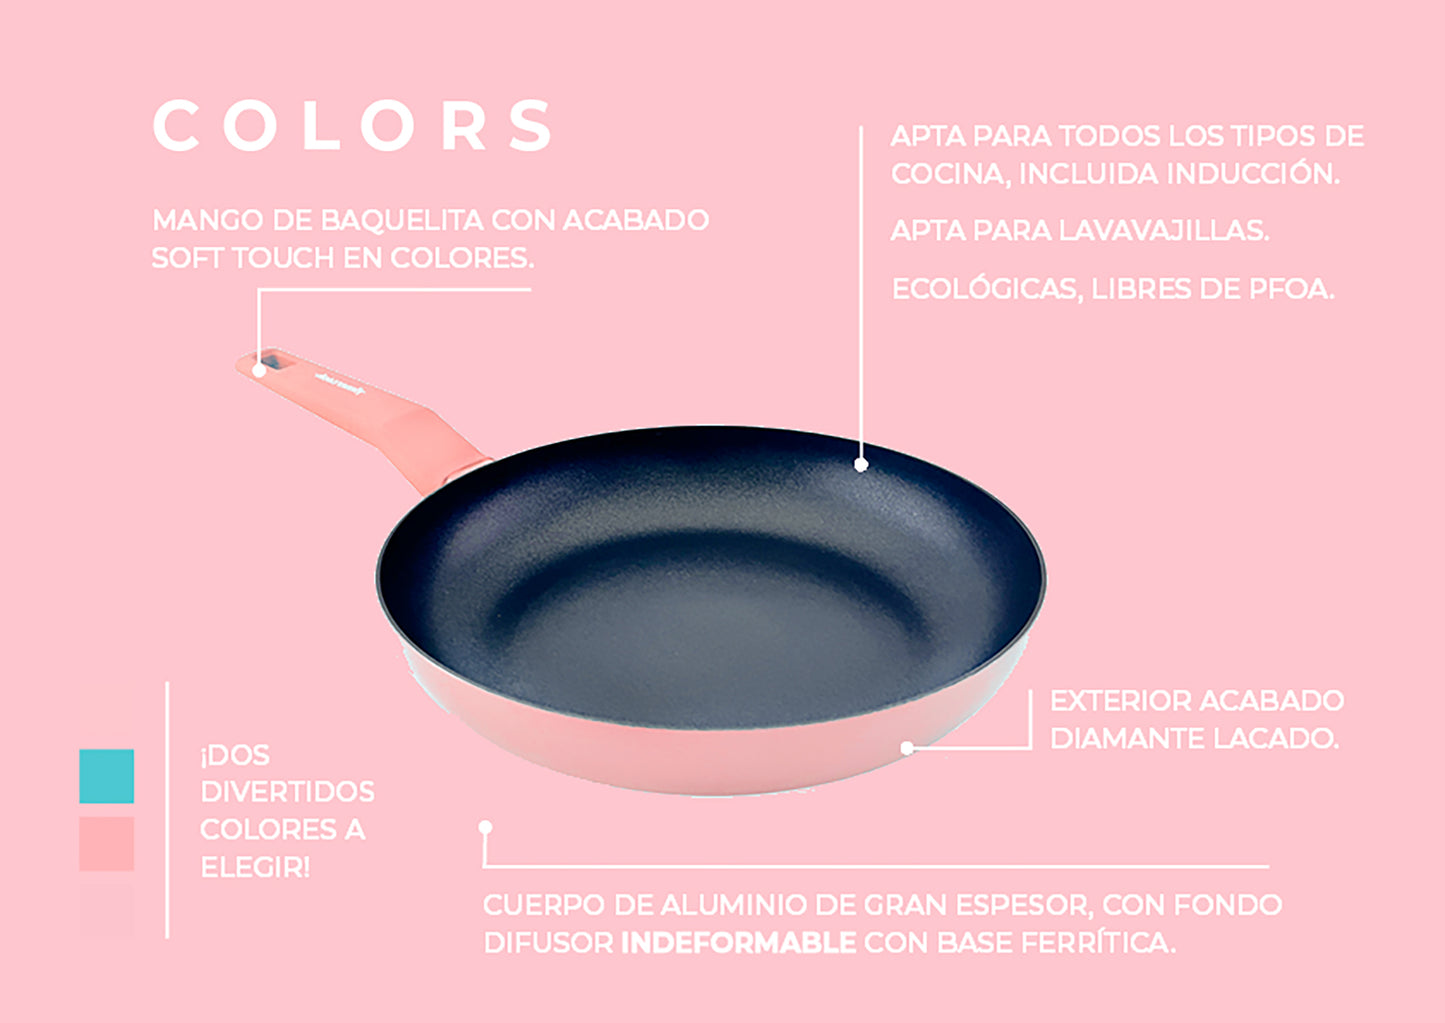 Cazo COLORS rosa pastel, apto para todo tipo de cocina incluso inducci –  Amercook Europe